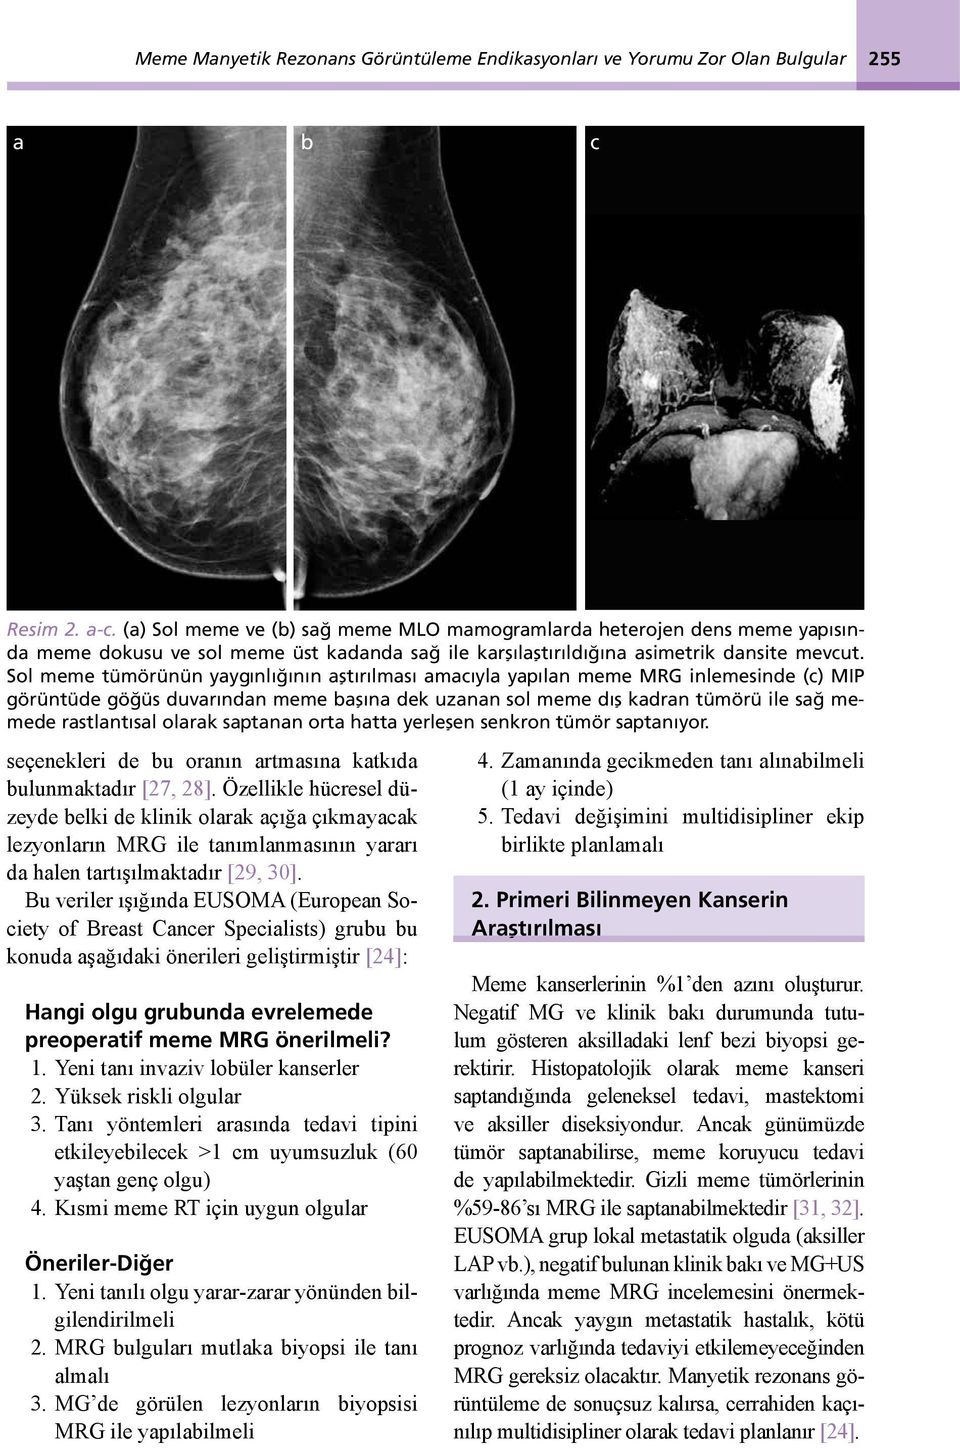 Sol meme tümörünün yaygınlığının aştırılması amacıyla yapılan meme MRG inlemesinde (c) MIP görüntüde göğüs duvarından meme başına dek uzanan sol meme dış kadran tümörü ile sağ memede rastlantısal